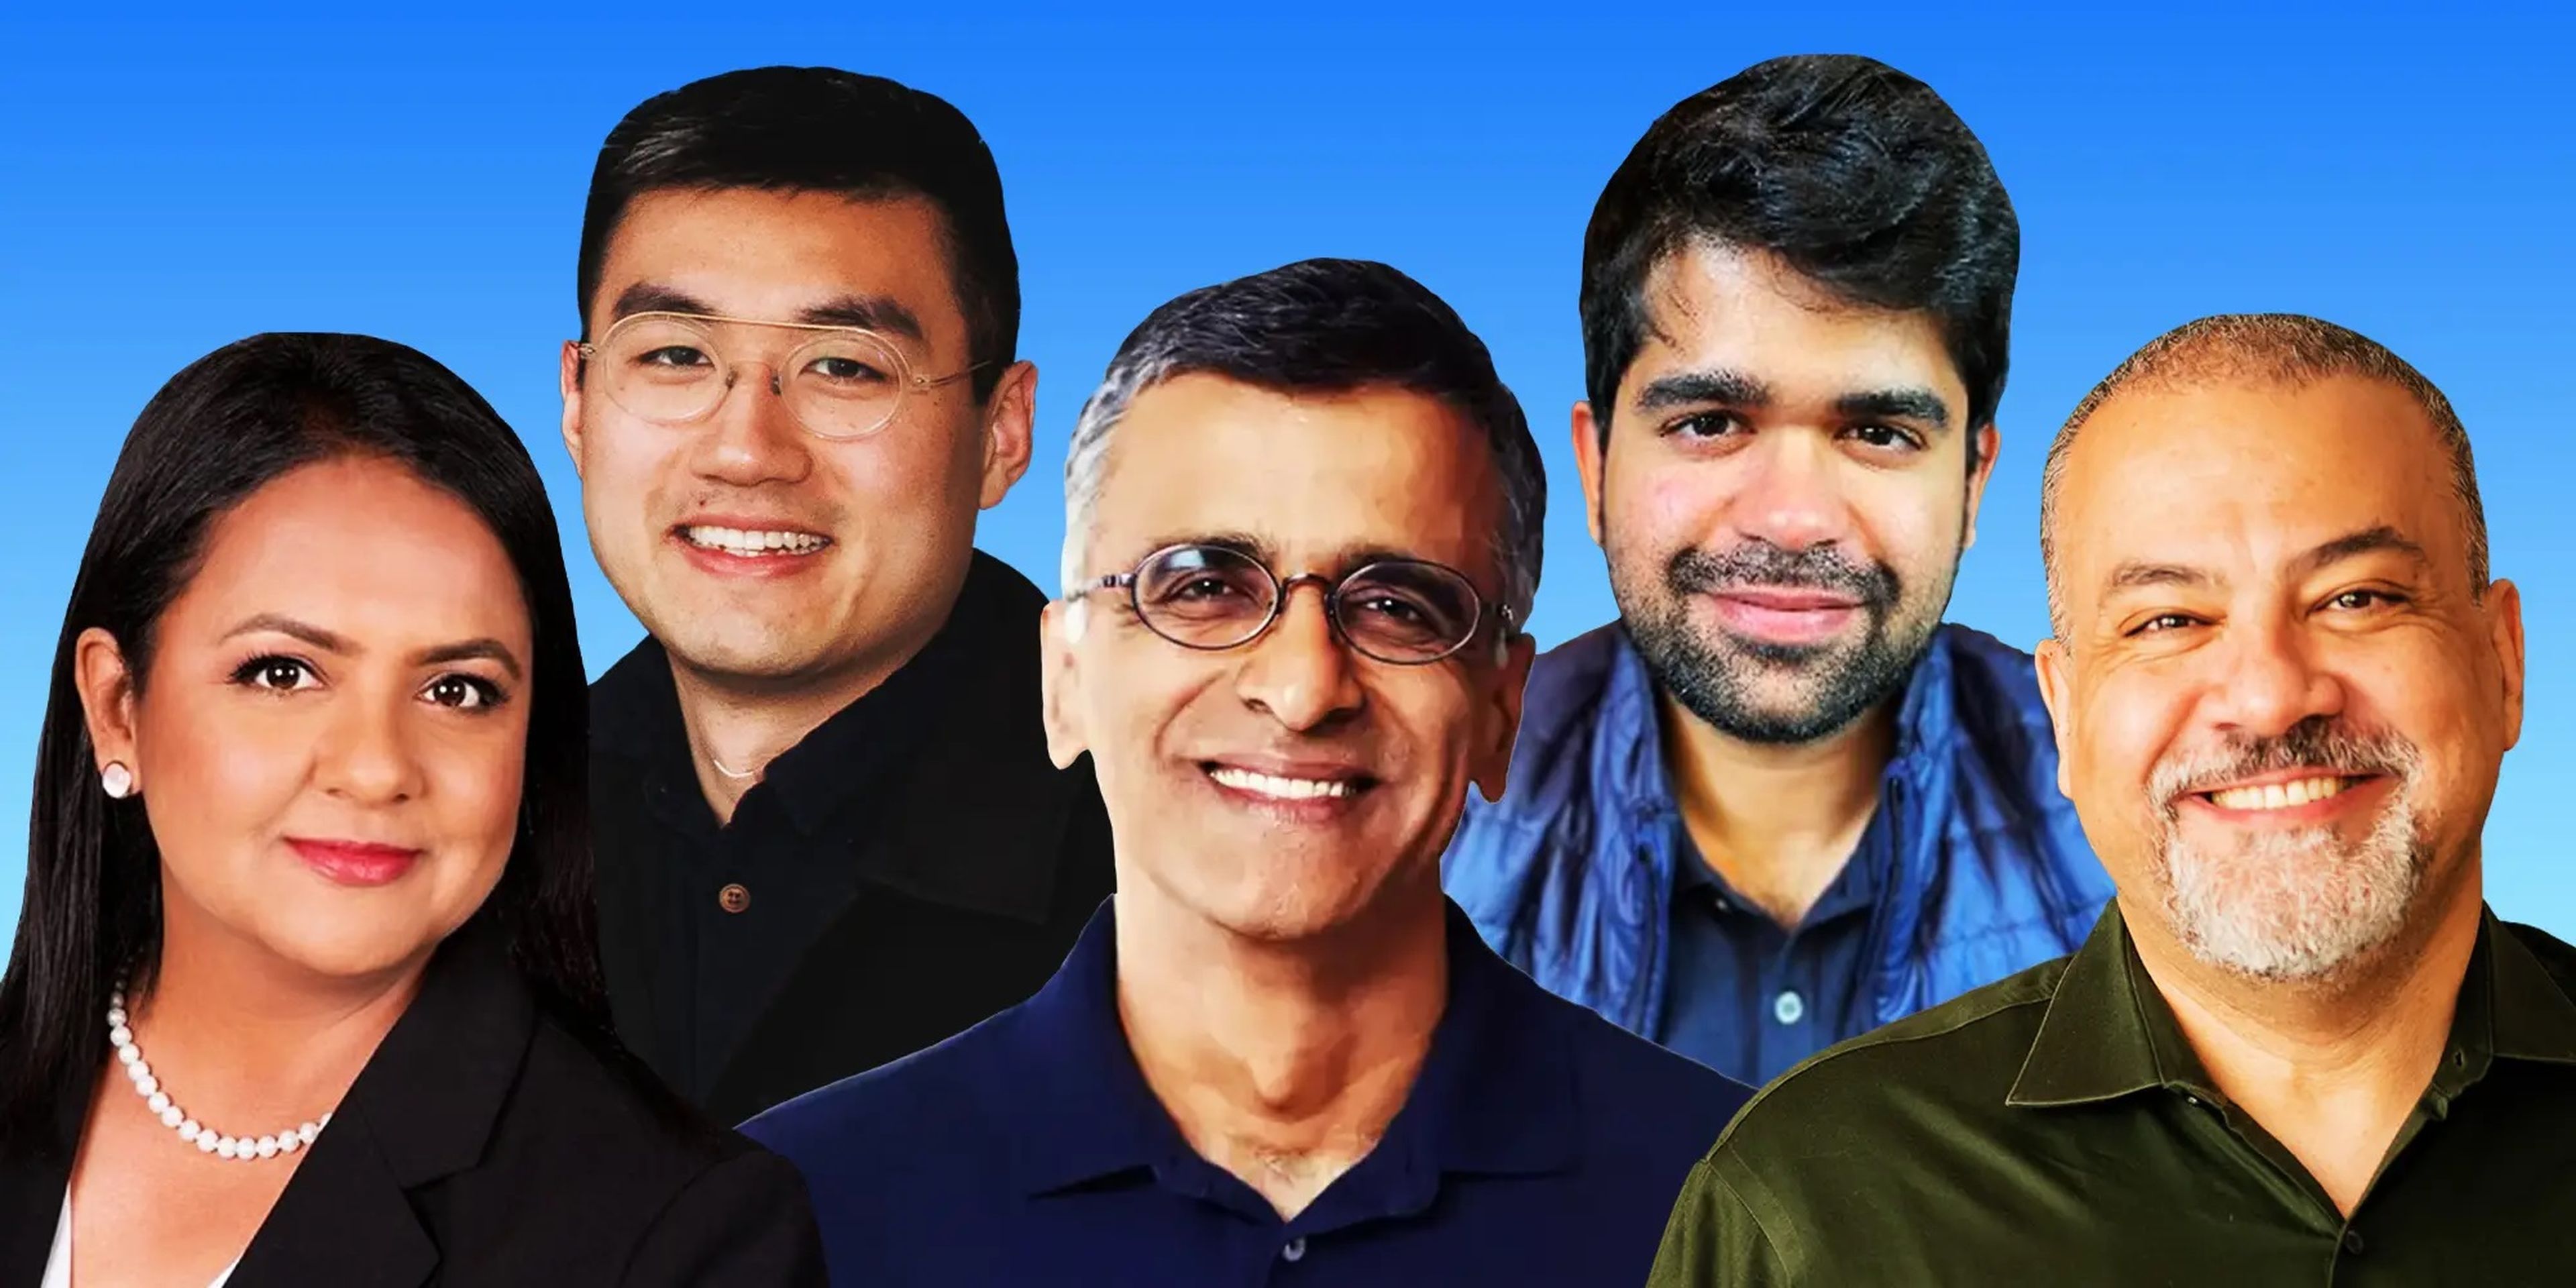 De izquierda a derecha: Uma Mahadevan, David Luan, Sridhar Ramaswamy, Aravind Srinivas y Amr Awadallah, fundadores de startups y exempleados de Google.